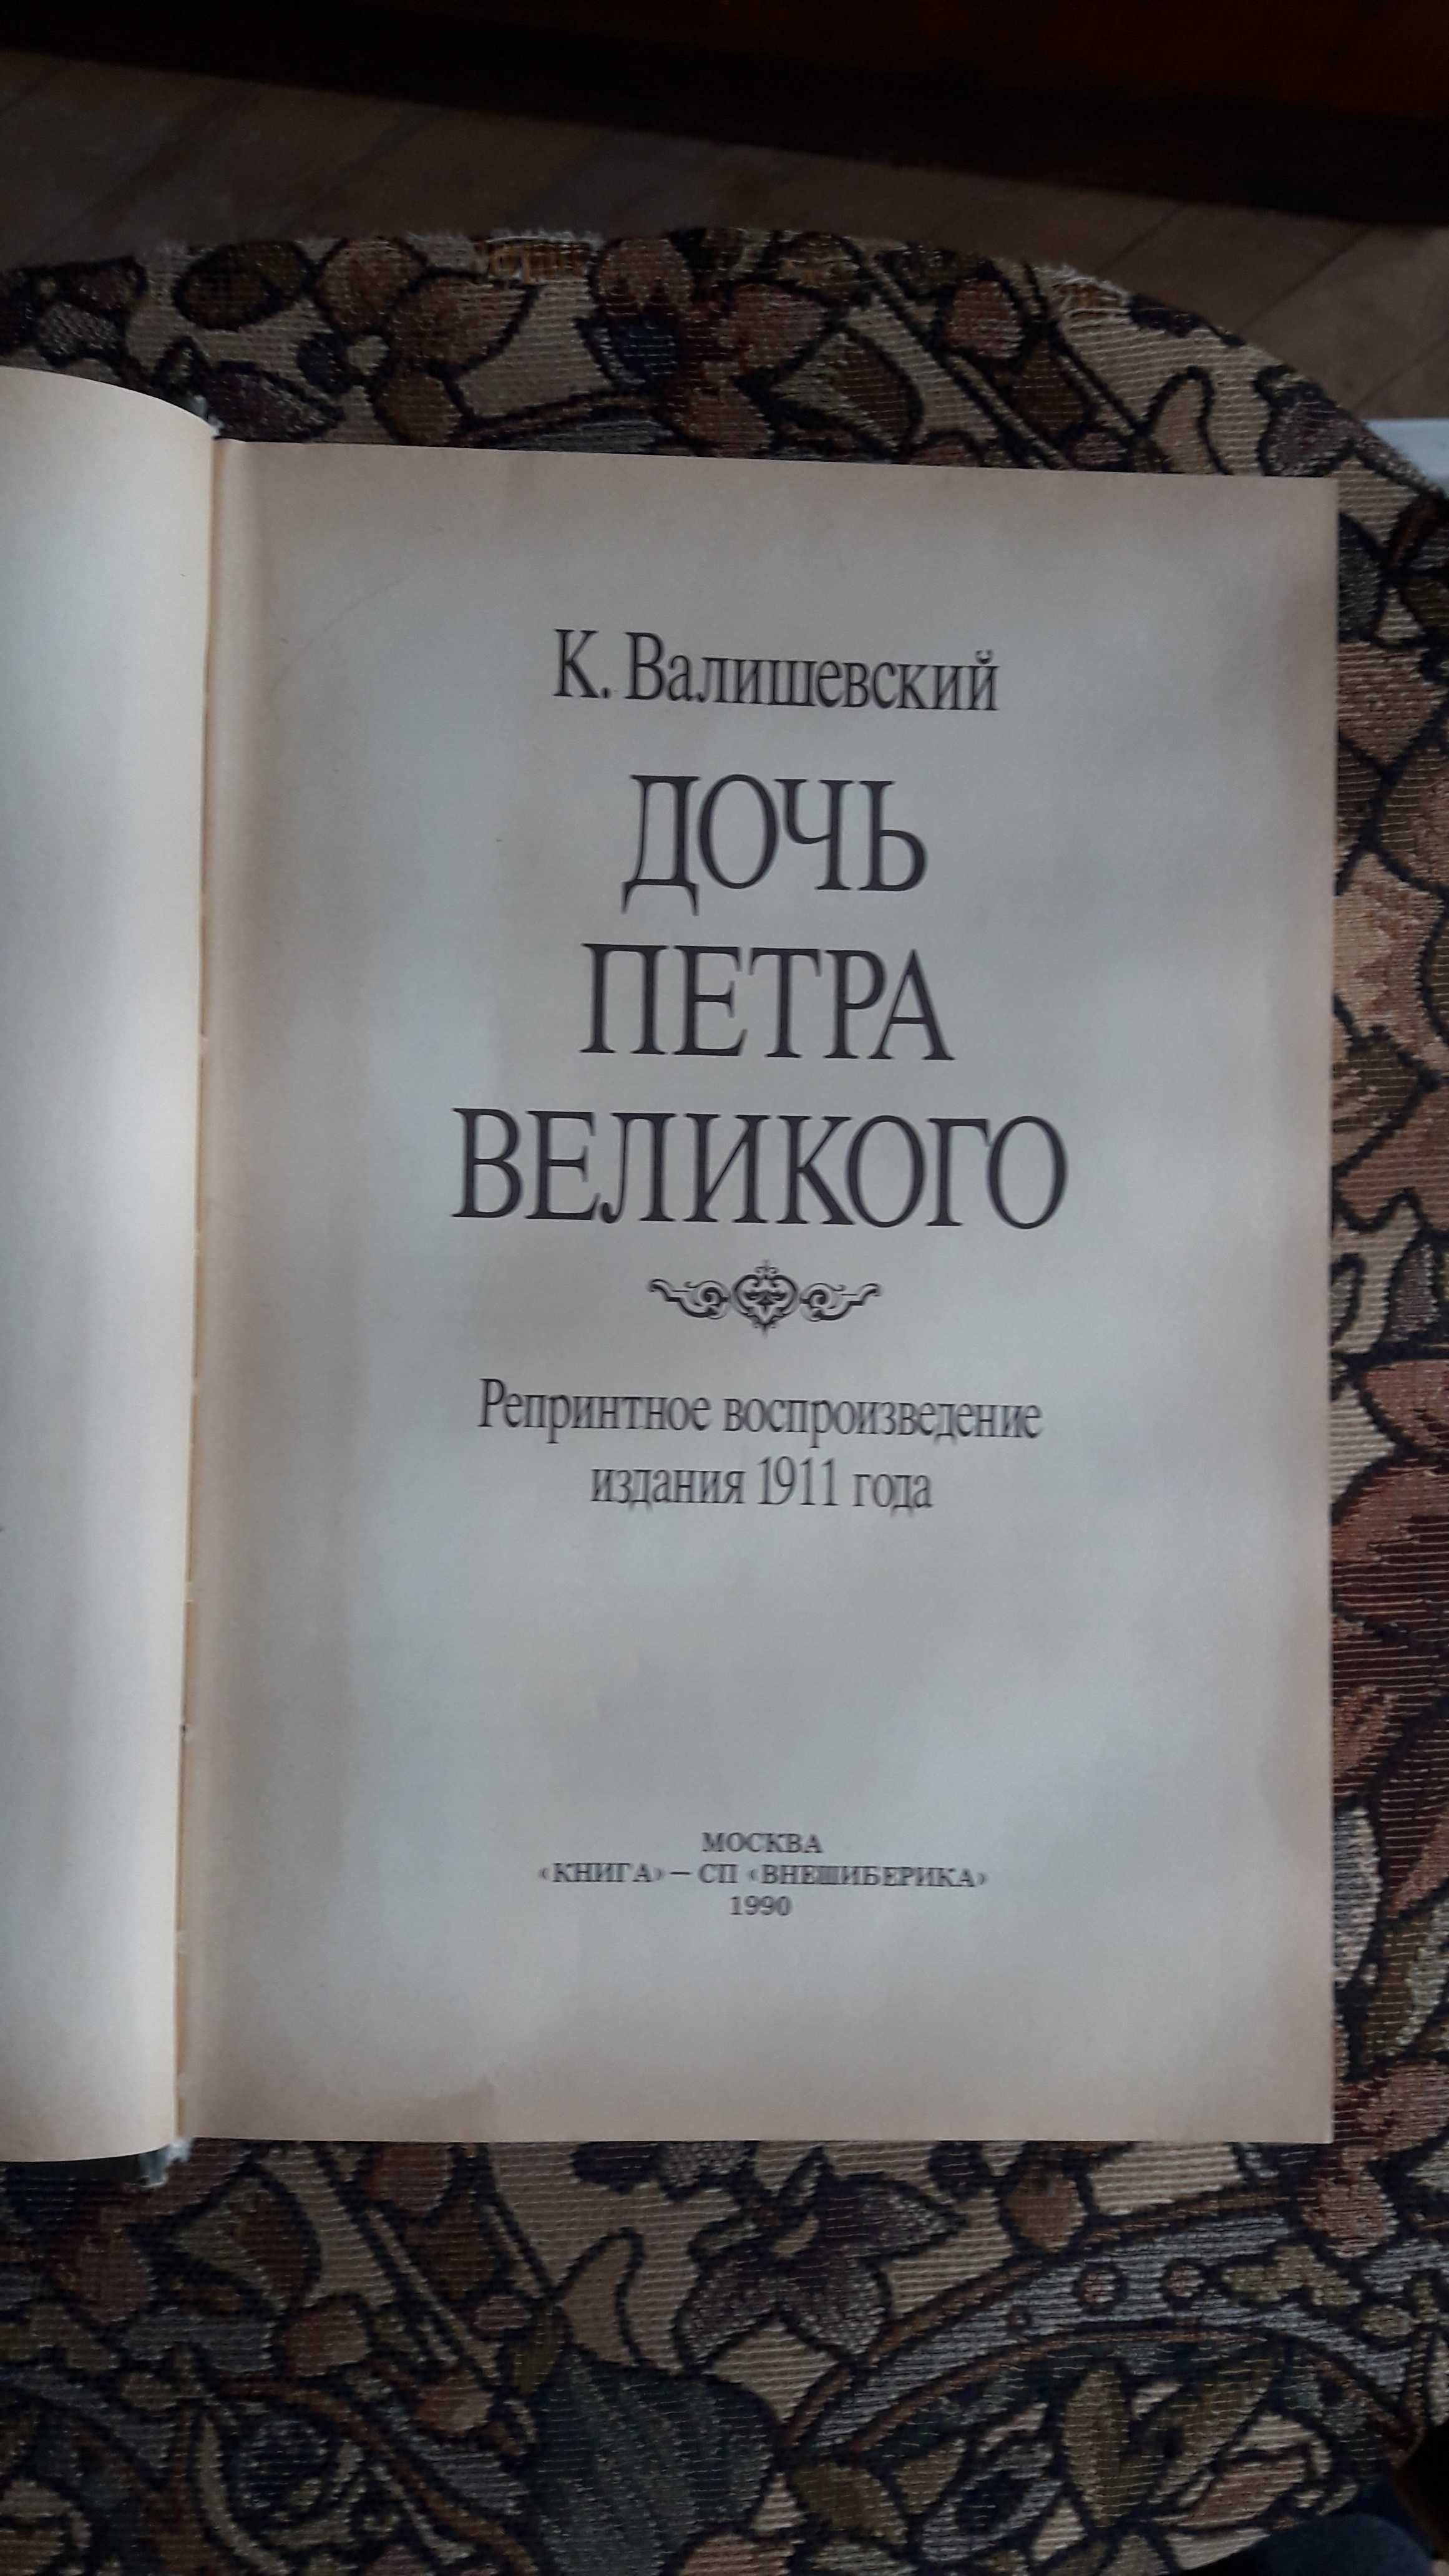 К. Валишевский "Дочь Петра Великого" репринтное издание 1911 года